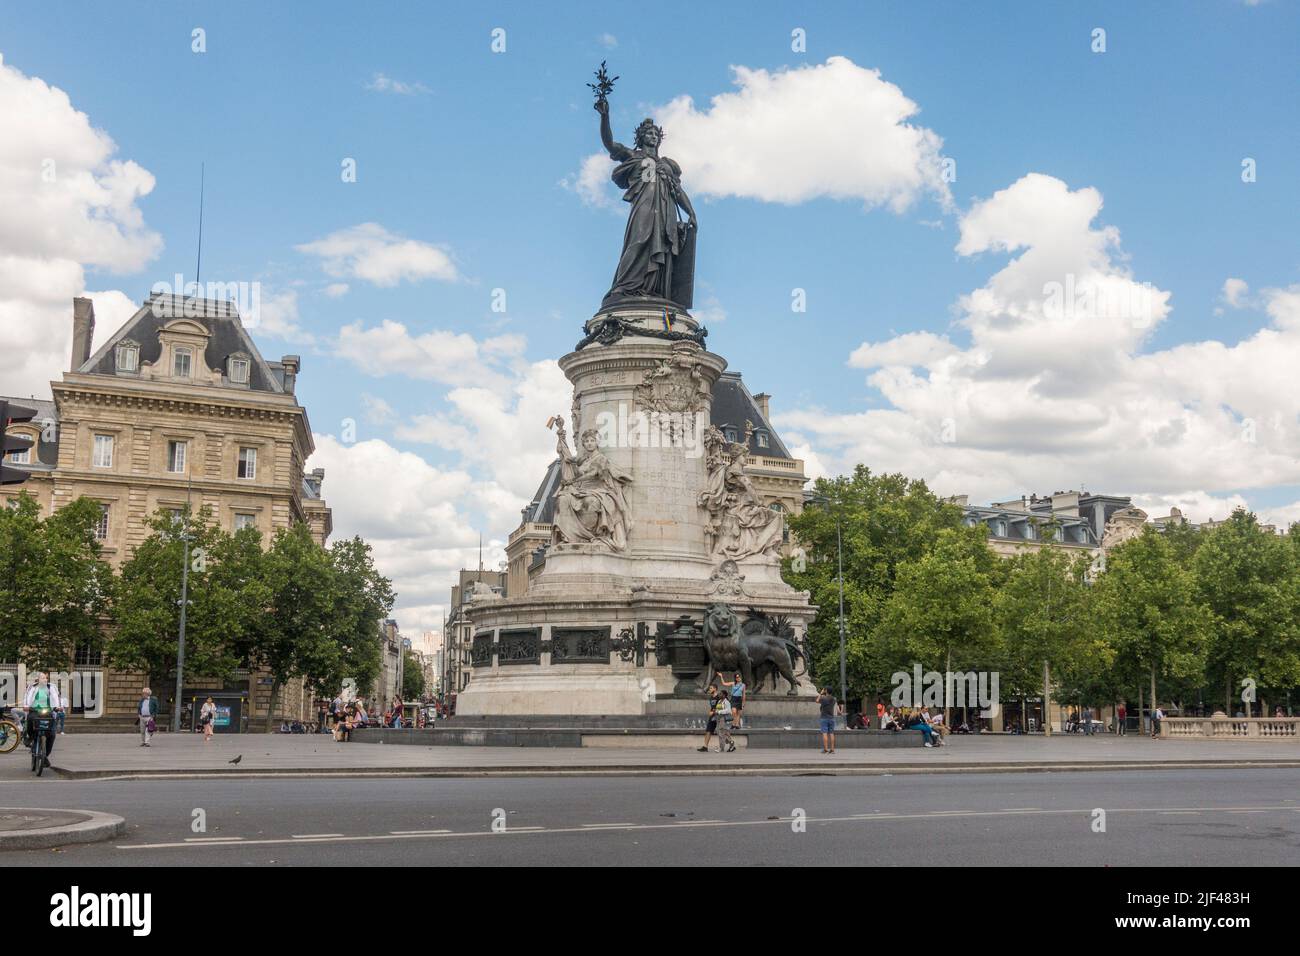 Statue of Marianne, place de la république, Monument à la République,  Republic Square, Paris, France. Stock Photo